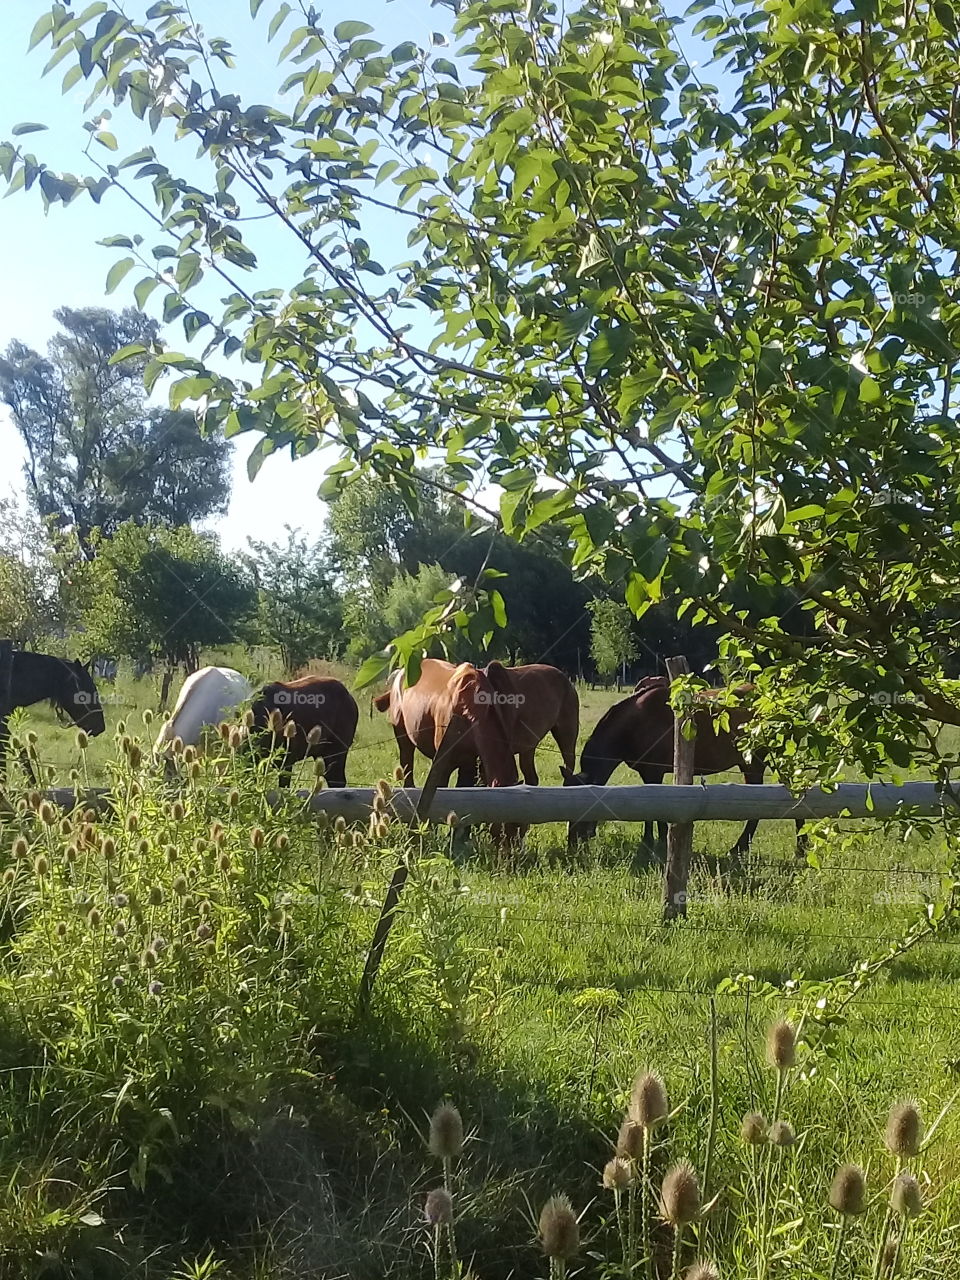 imágenes de caballos pastando en el campo en una calurosa y despejada tarde de verano